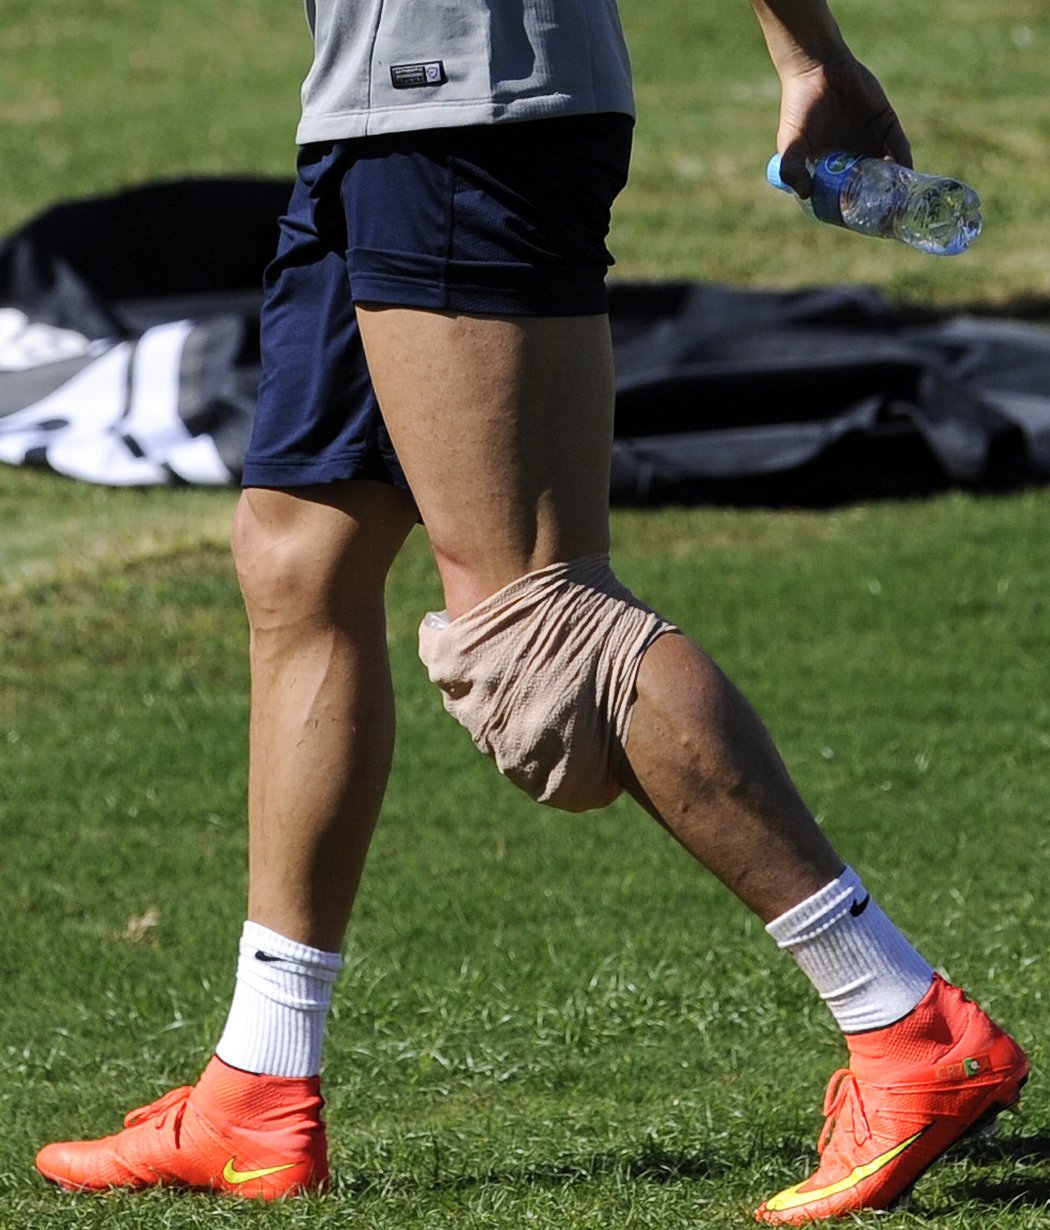 Hvězdný Cristiano Ronaldo na MS v Brazílii možná nenastoupí! Po odchodu z tréninku musel ledovat poraněné koleno